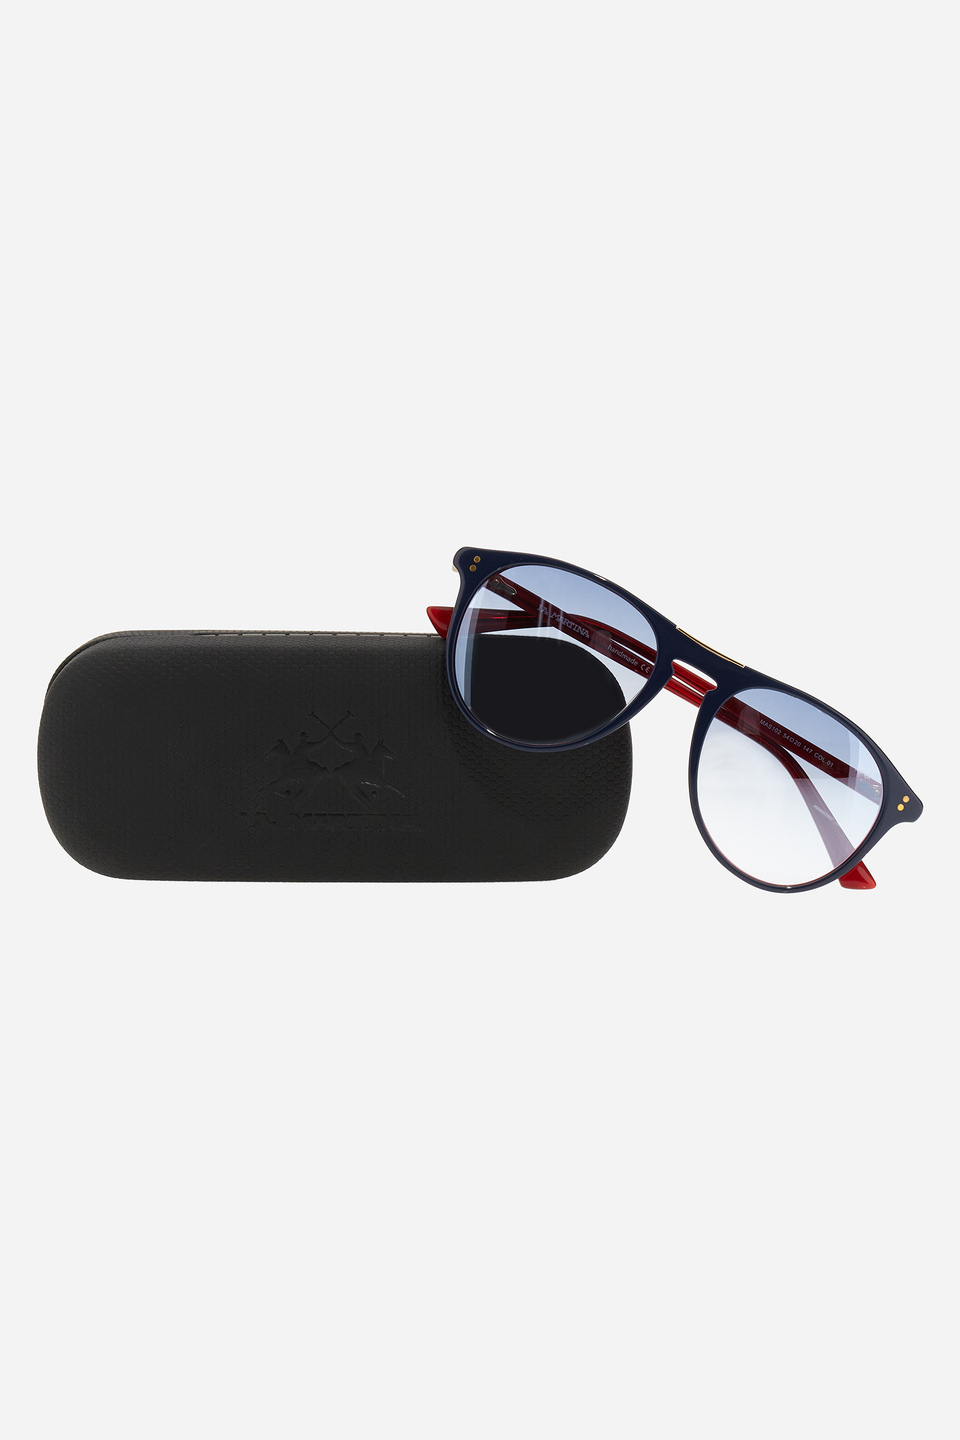 Sonnenbrille aus Acetat in Tropfenform | La Martina - Official Online Shop